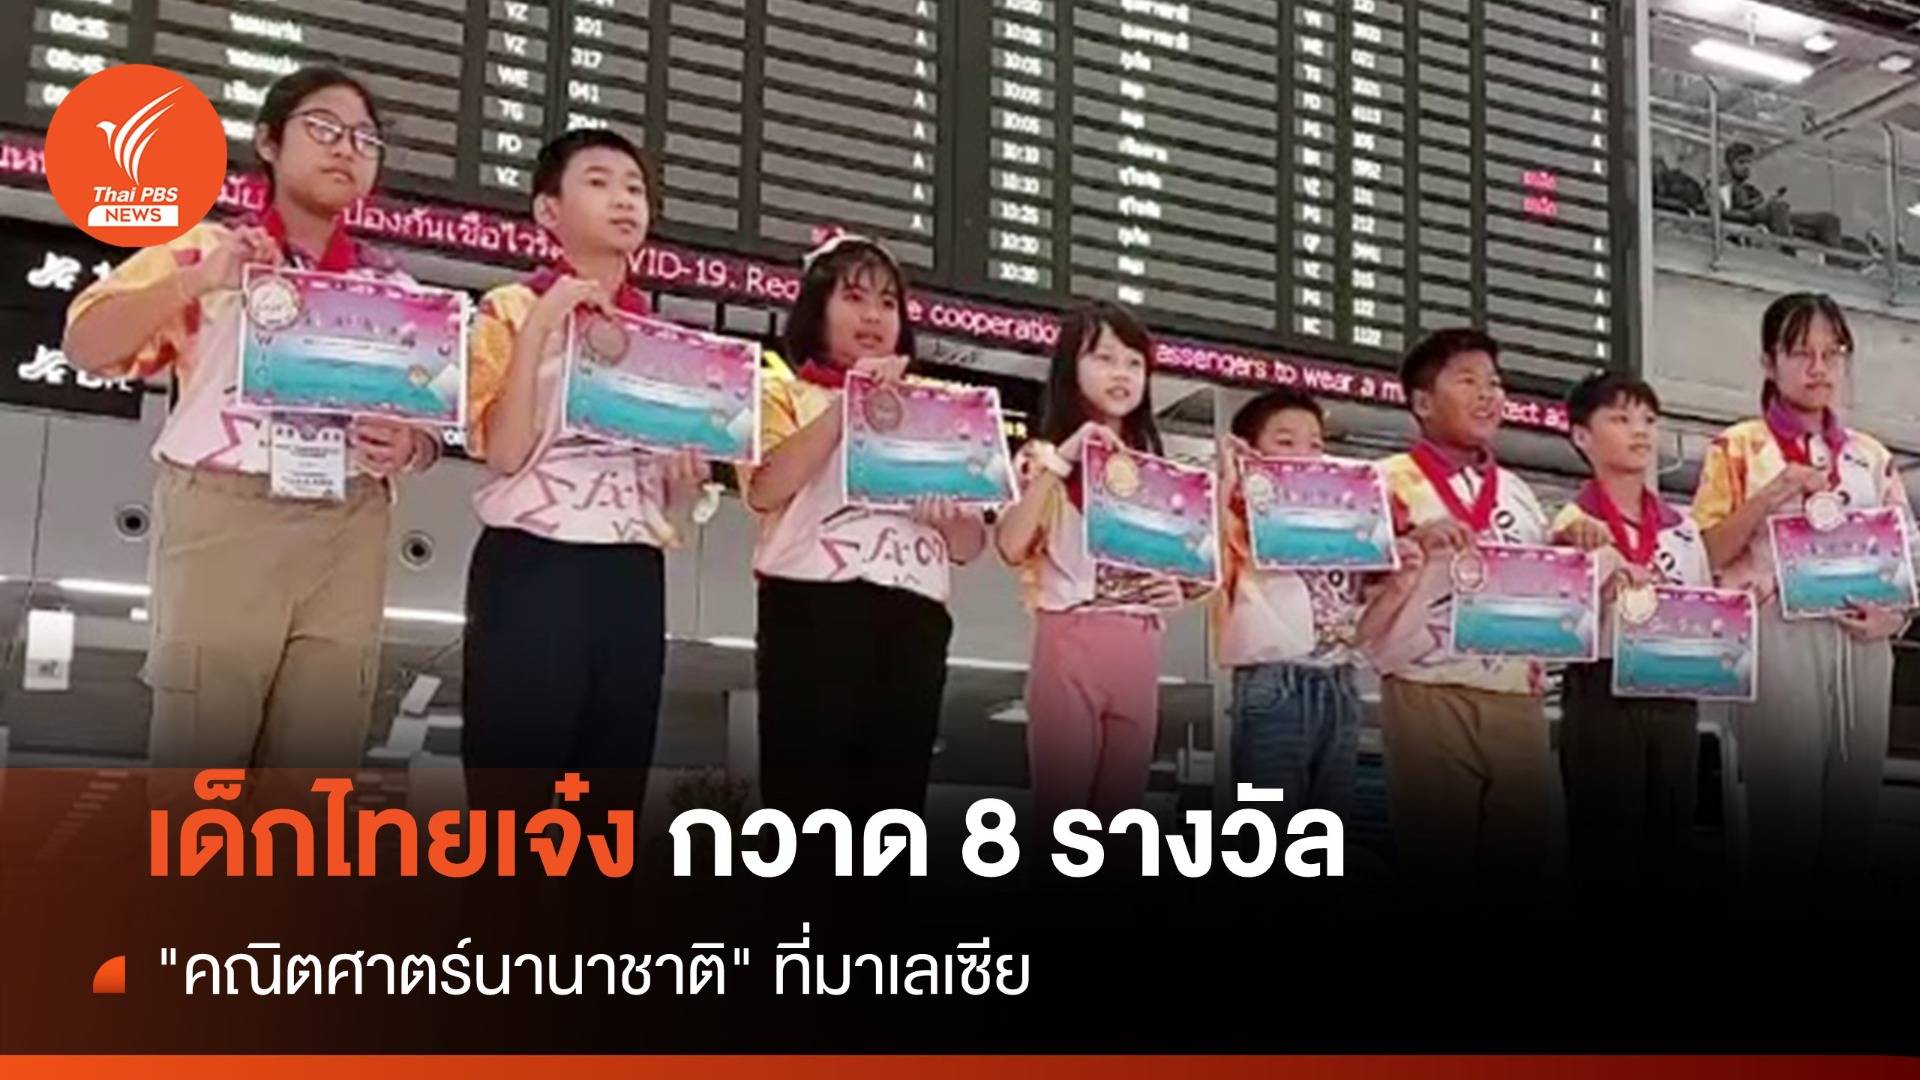 เด็กไทยสร้างชื่อ กวาด  8 รางวัล "คณิตศาตร์นานาชาติ" ที่มาเลเซีย